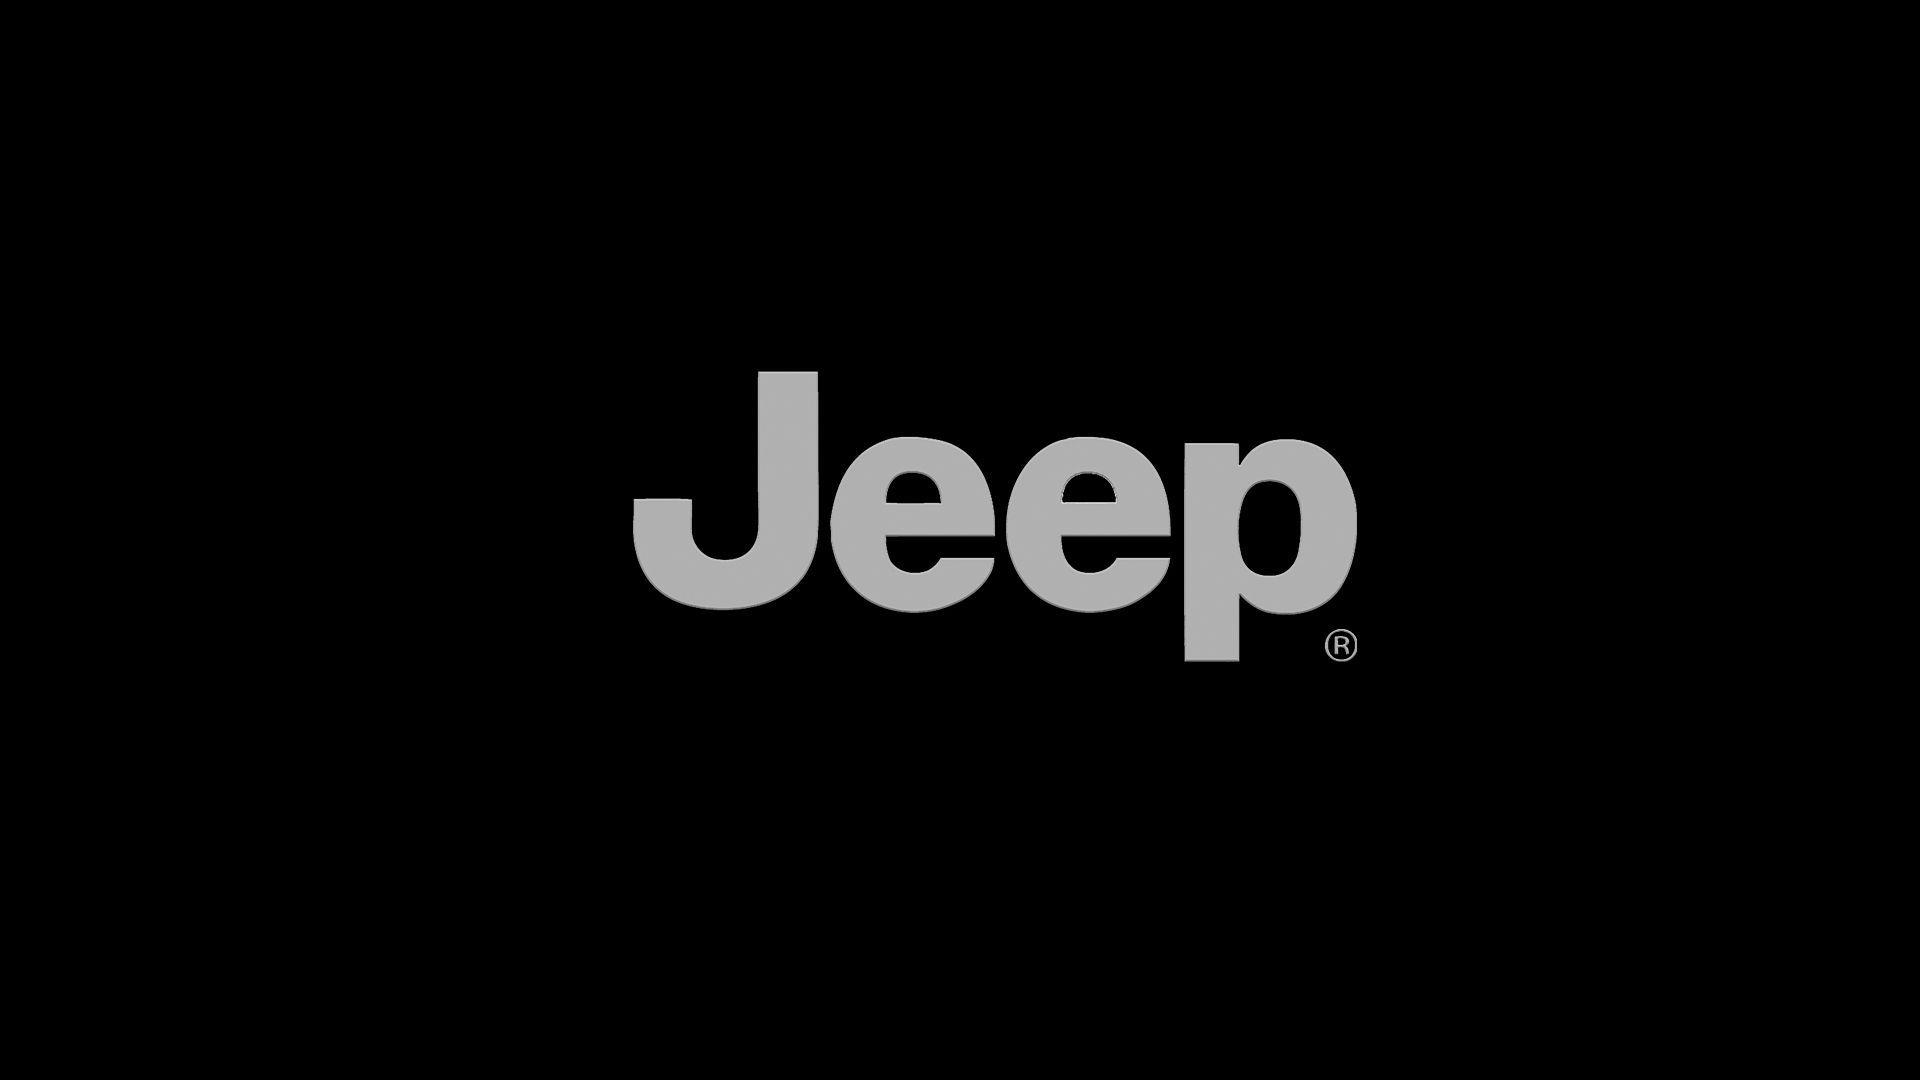 1920x1080 Jeep logo đen hình nền hd.  Hình nền xe Jeep, Xe Jeep, Biểu trưng